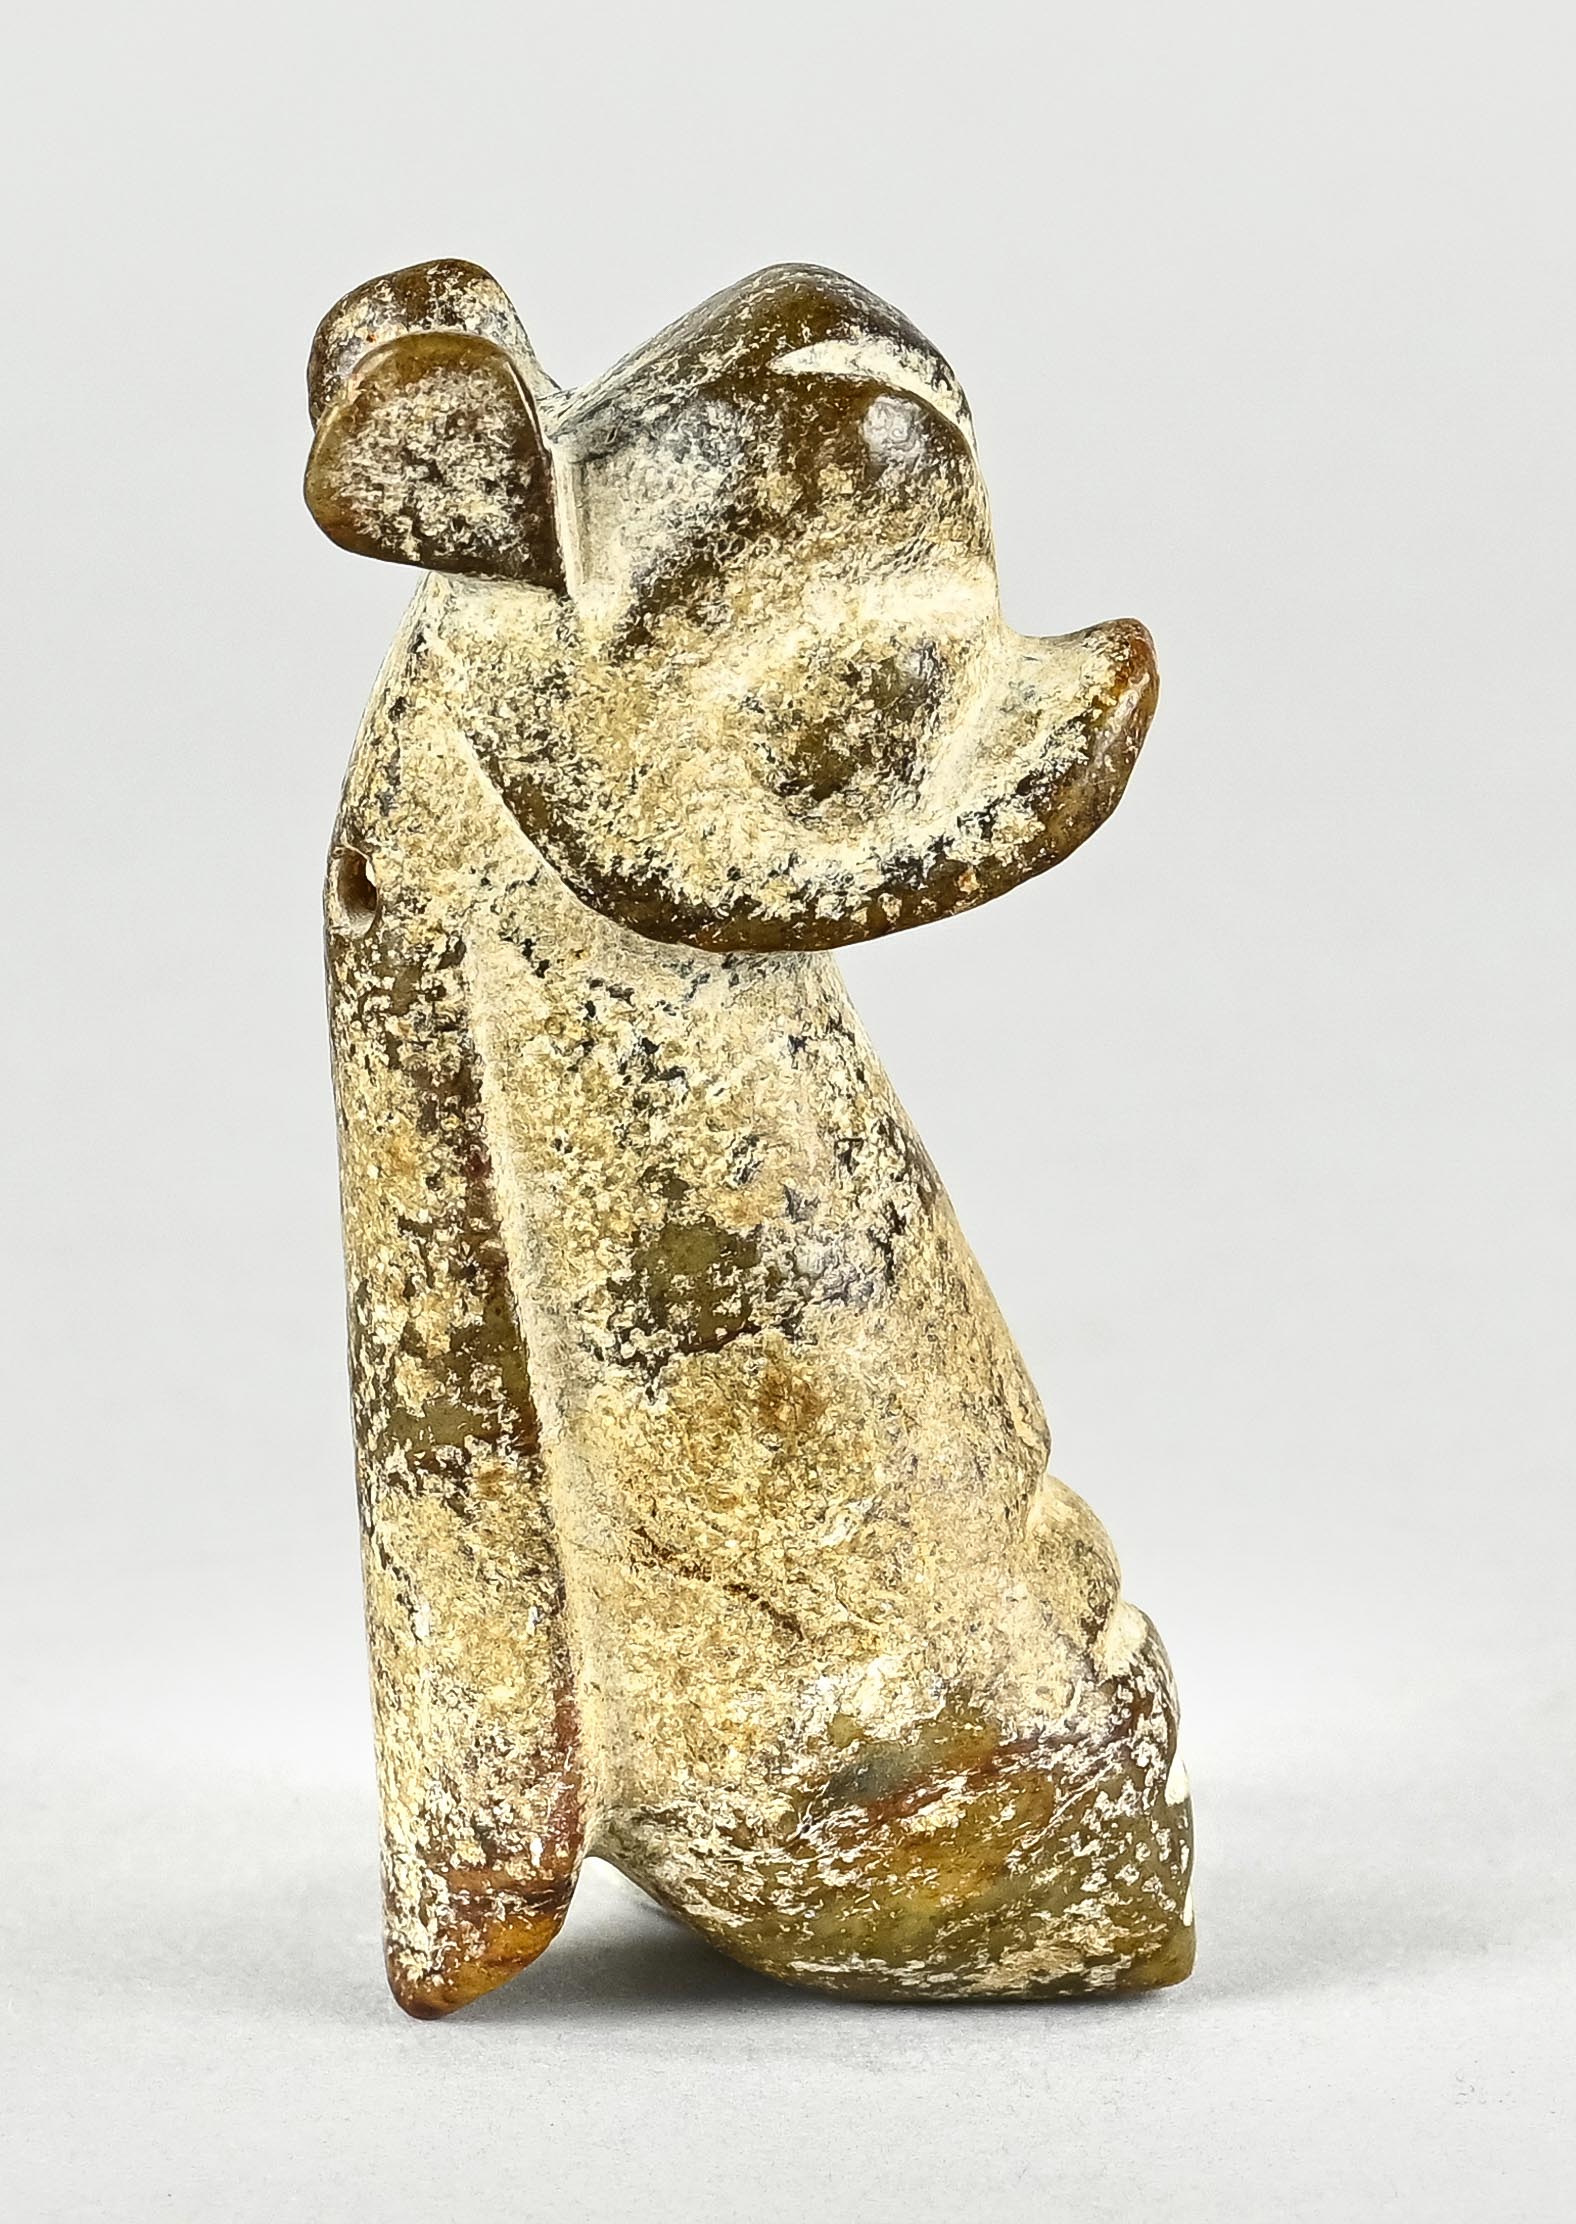 Hongshang Amulett, Fantasiefigur, Tier ähnlich, Jade mit Patina, China, Höhe 9 cm - Bild 2 aus 4